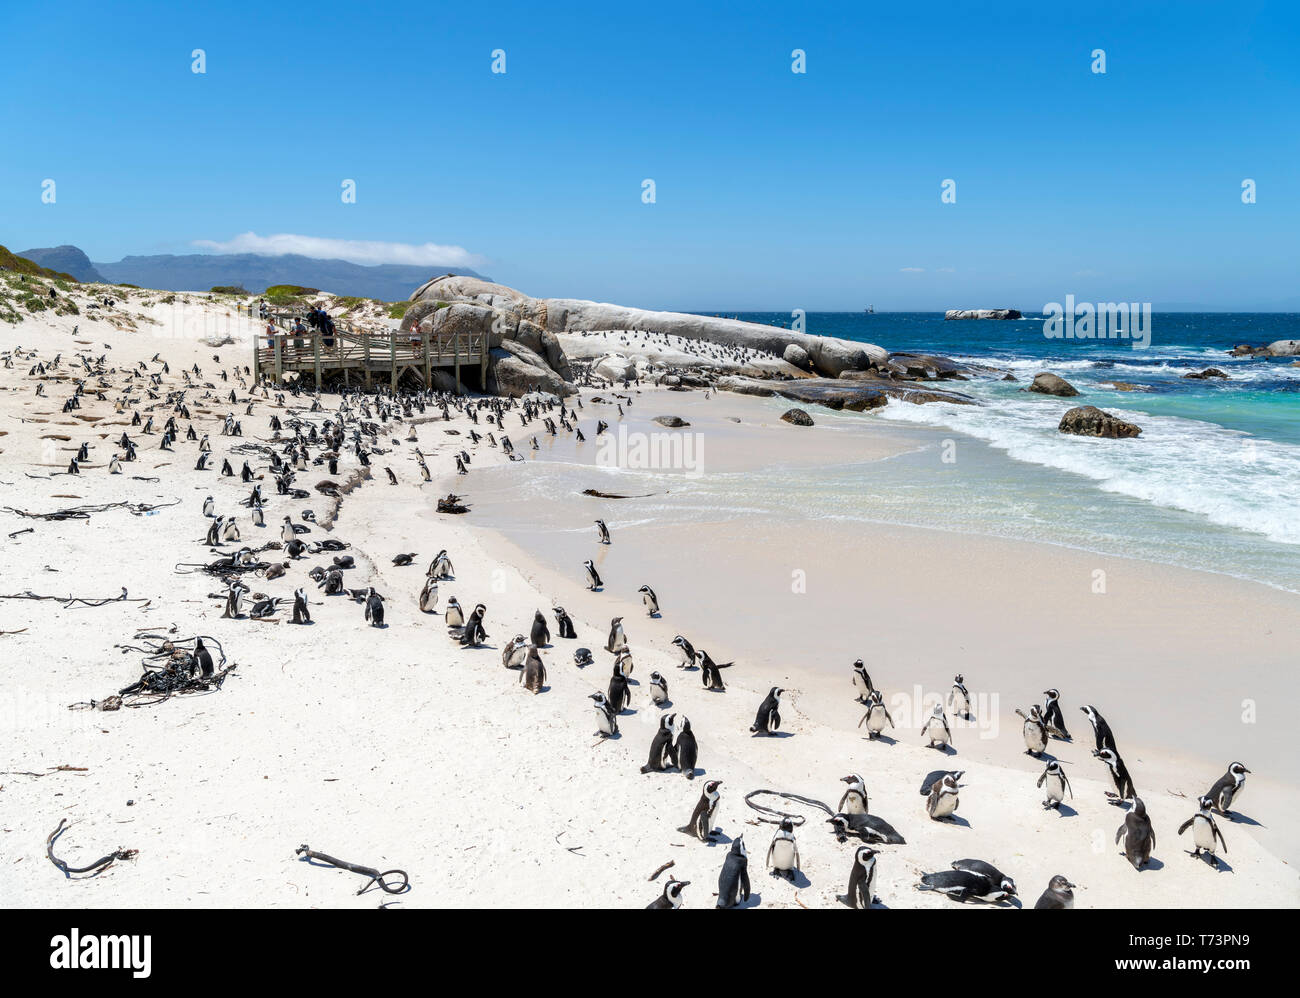 Colonie de pingouins africains (Spheniscus demersus) à la plage de Boulders, Simon's Town, Cape Town, Western Cape, Afrique du Sud Banque D'Images